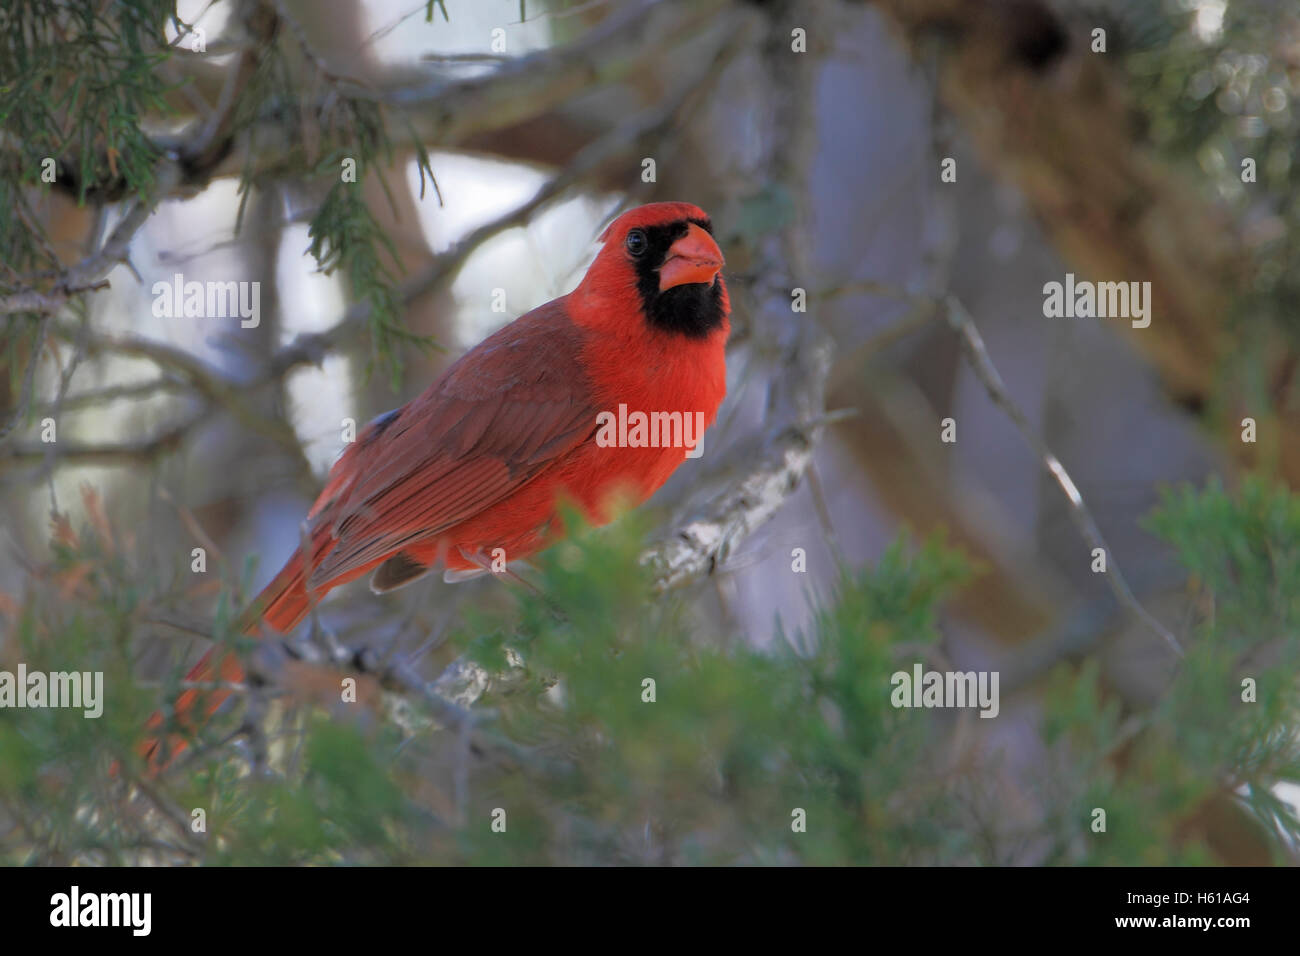 Northern cardinal (Cardinalis cardinalis) on branch, Cape May State Park, New Jersey, USA Stock Photo